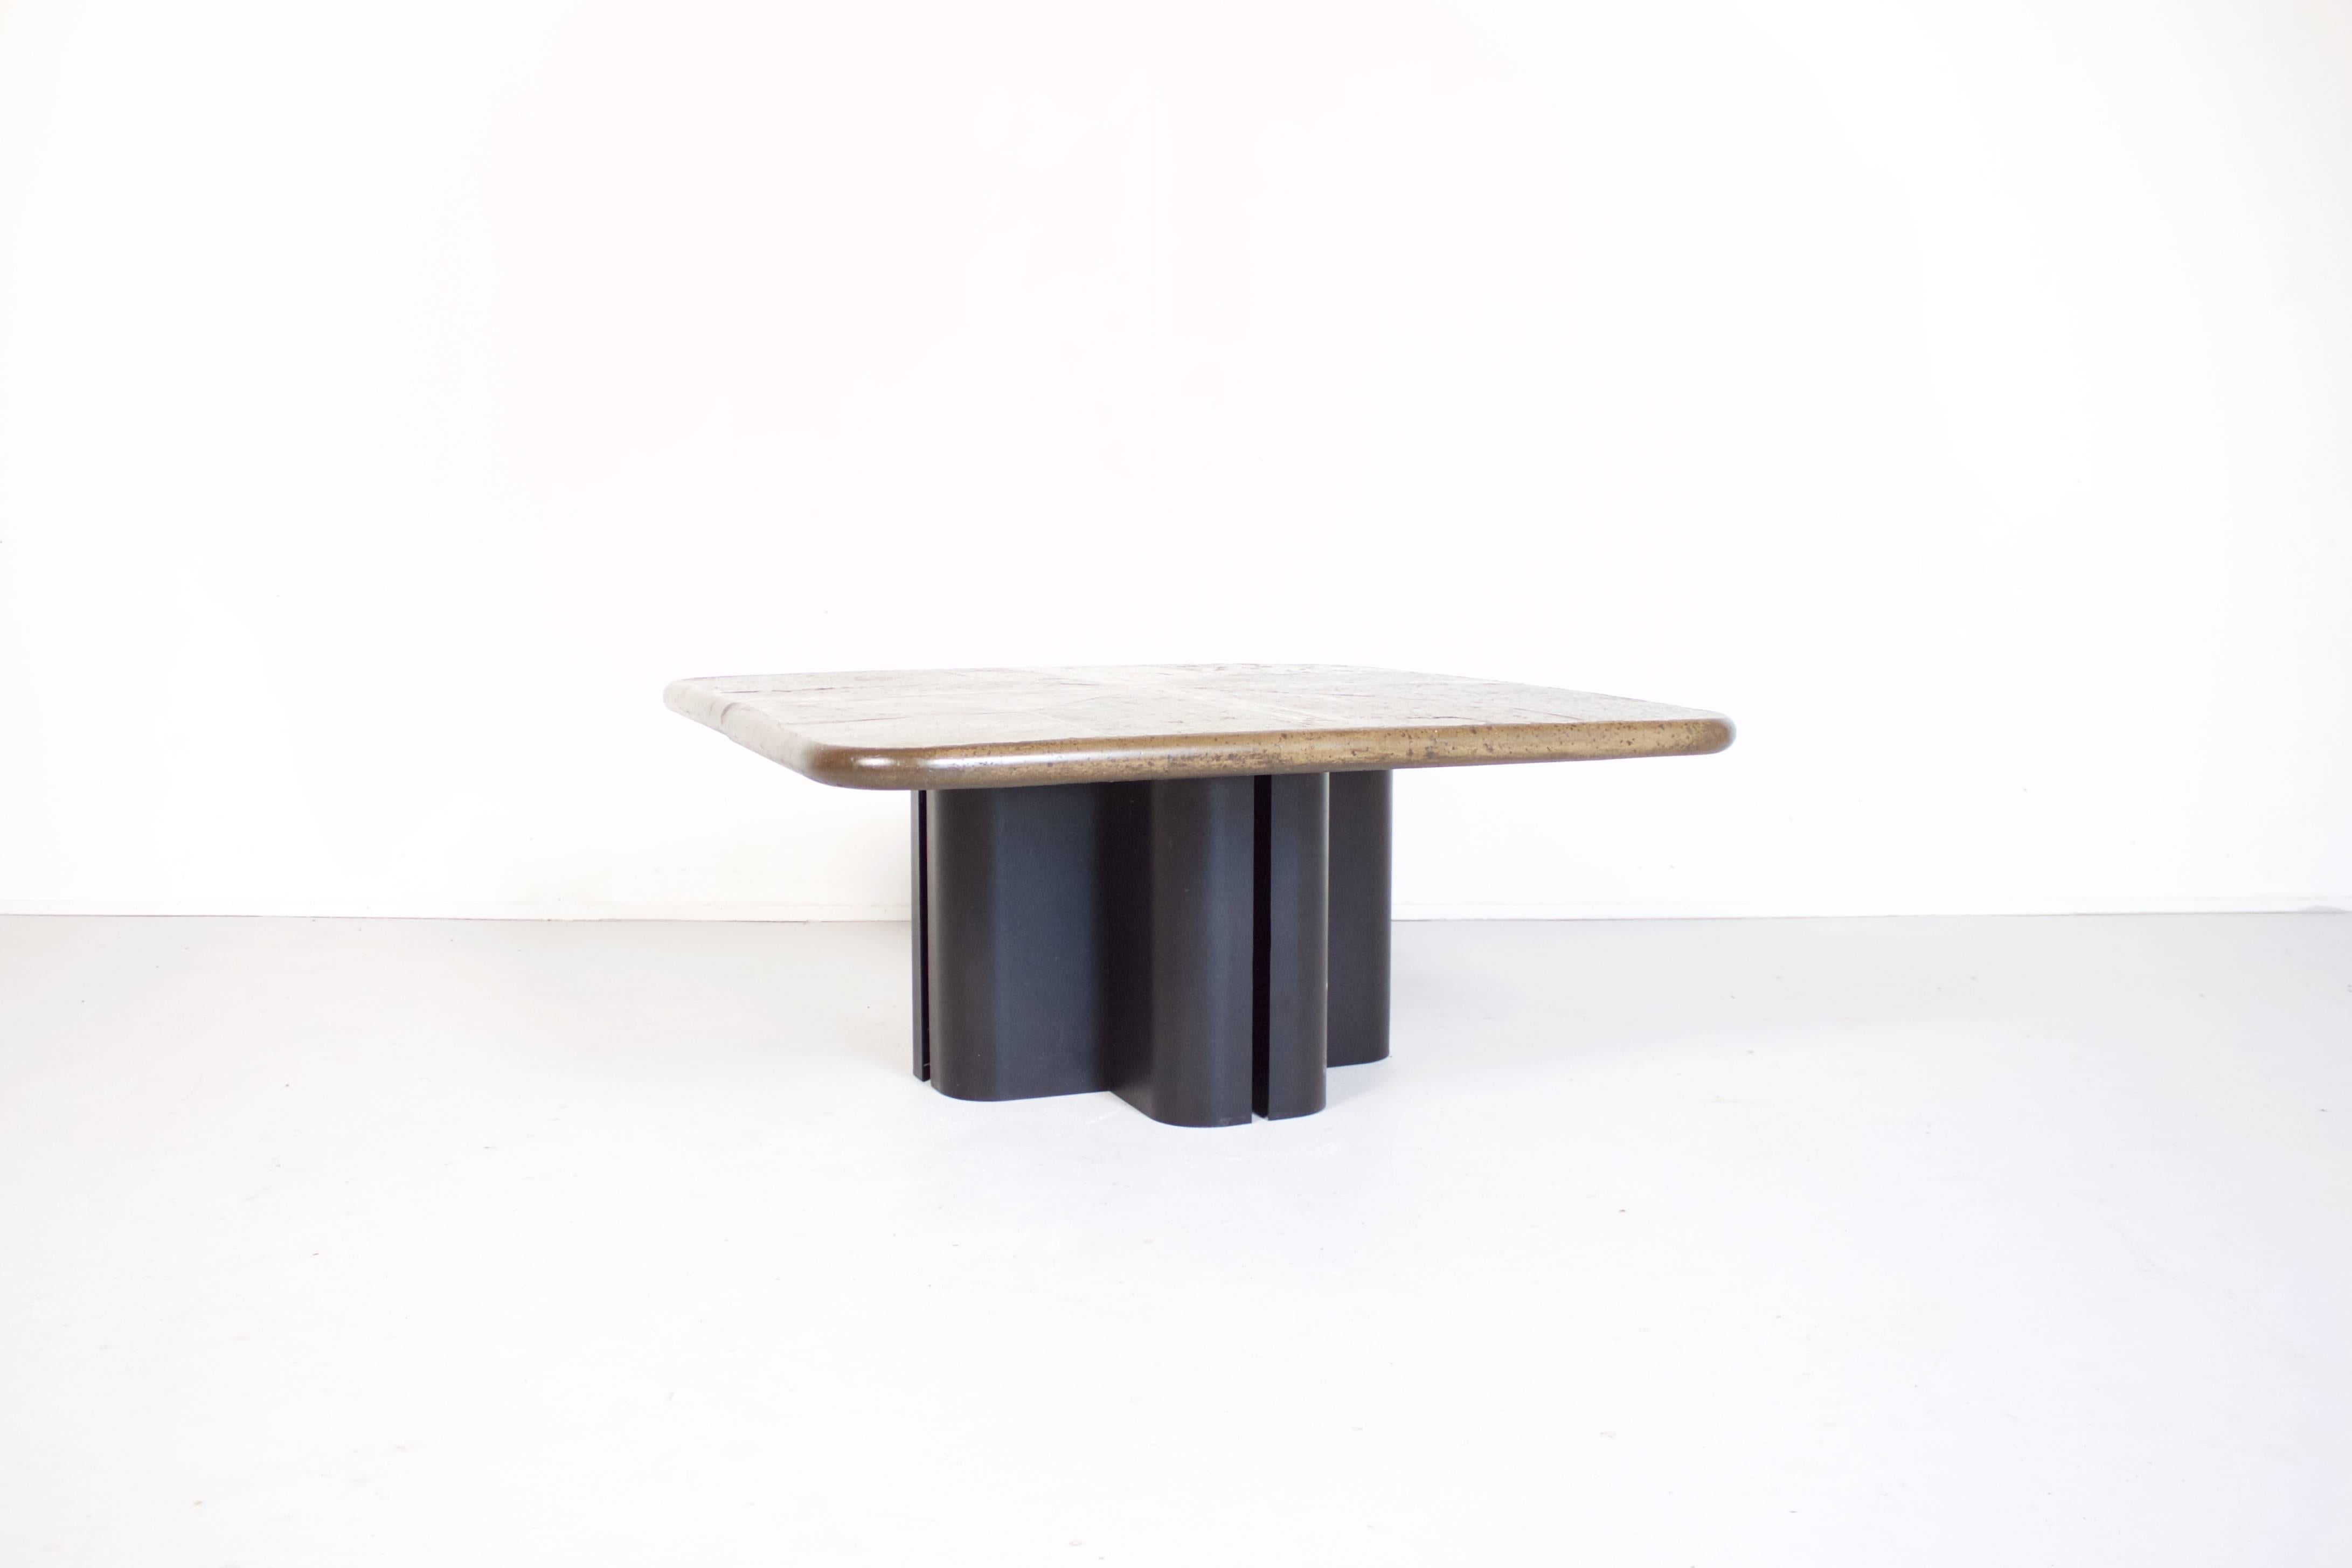 Einzigartiger brutalistischer Couchtisch im Stil der niederländischen Skulptur M. Kingma. 

Die Tischplatte ist ein Mosaik aus Schieferplatten und Messingdetails. 

Der Tisch ist vom Künstler auf einer Messingeinlage auf der Tischplatte signiert.